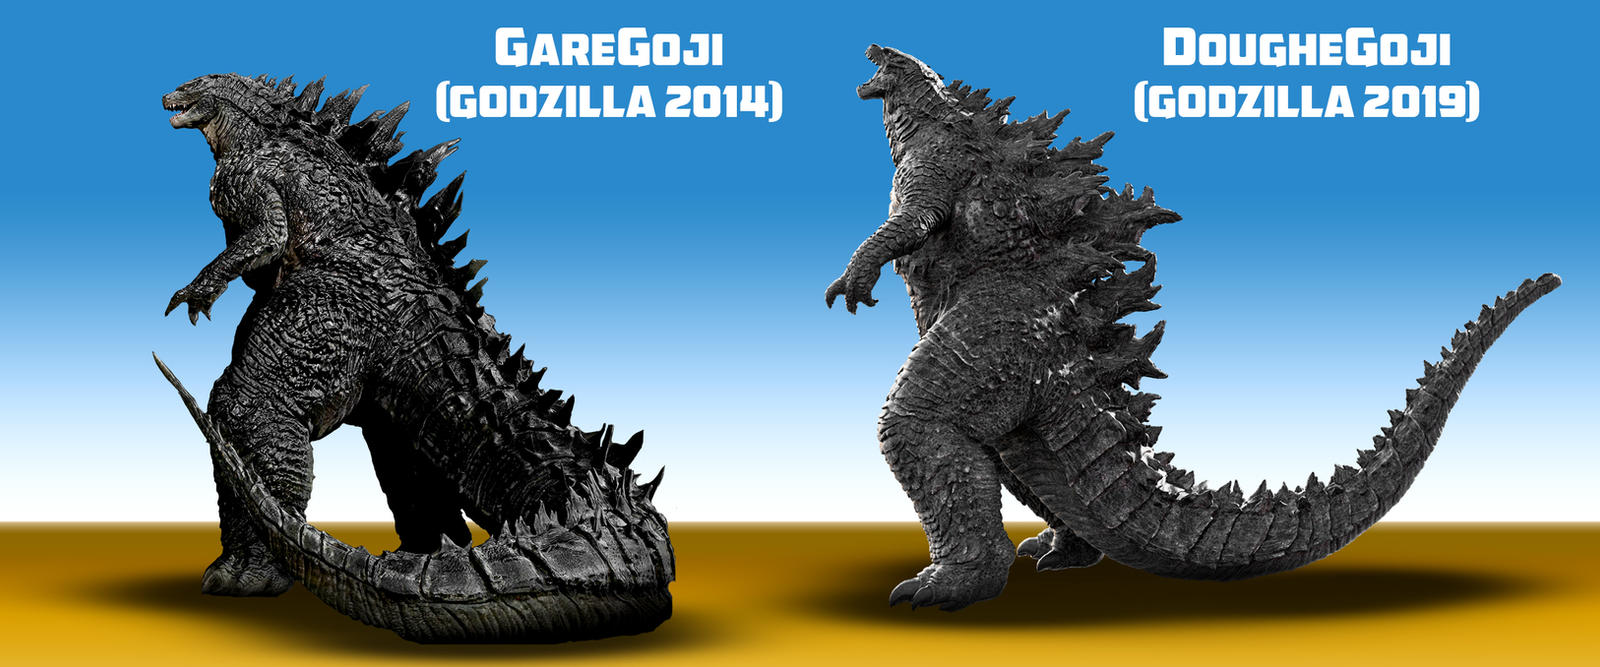 Godzilla 2014 2019 Comparison By Awesomeness360 On Deviantart